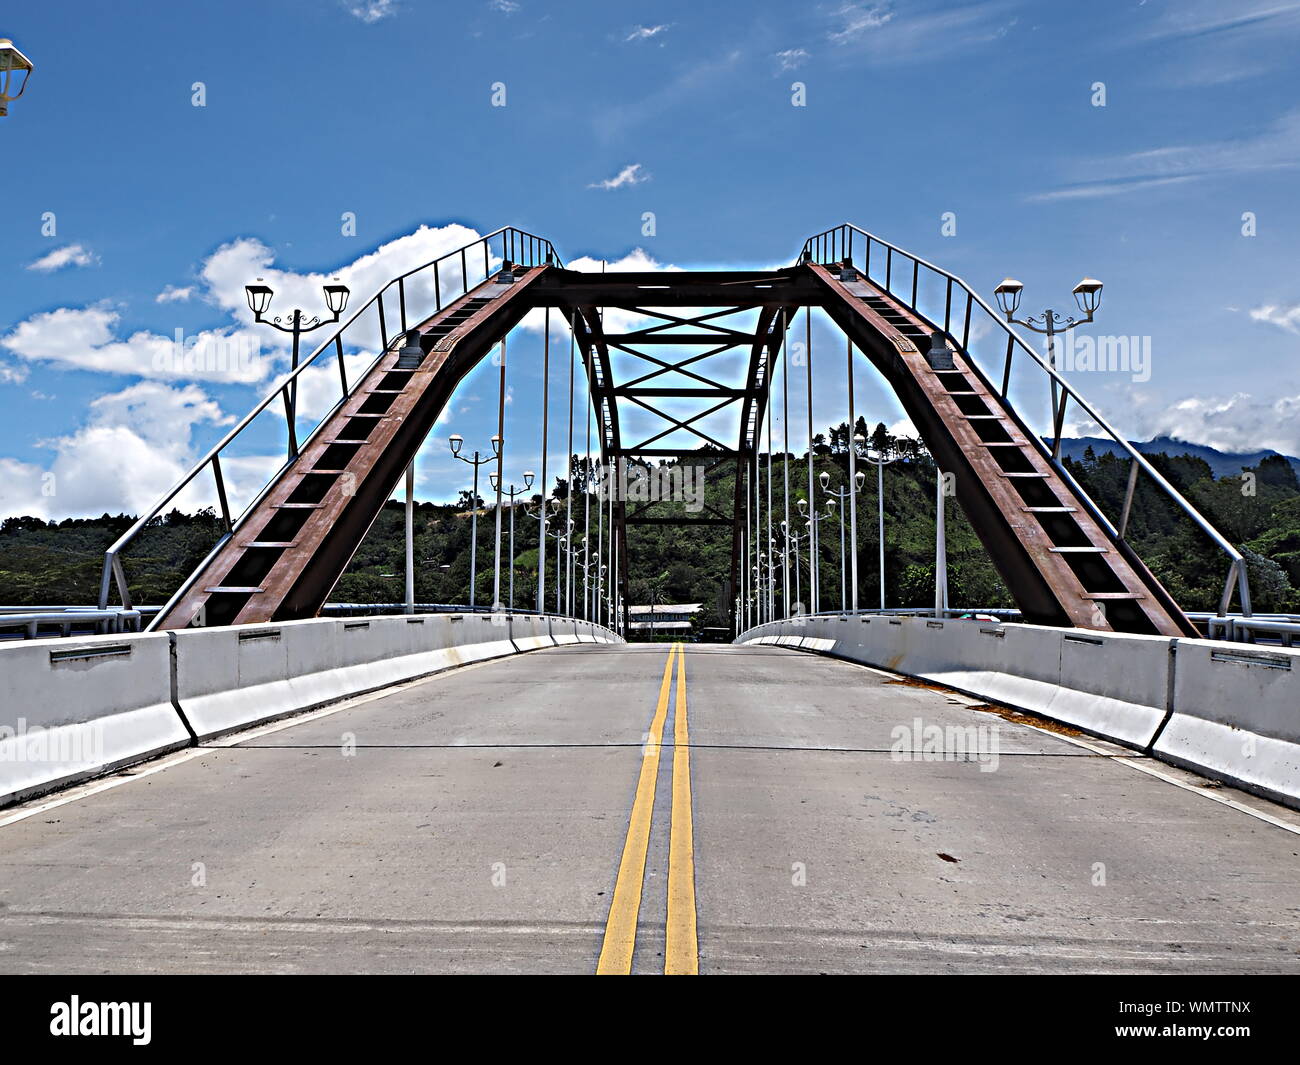 Strada sospesa ad arco in acciaio e ponte pedonale sul fiume Caldera a Boquete, Panama Highlands. Foto Stock